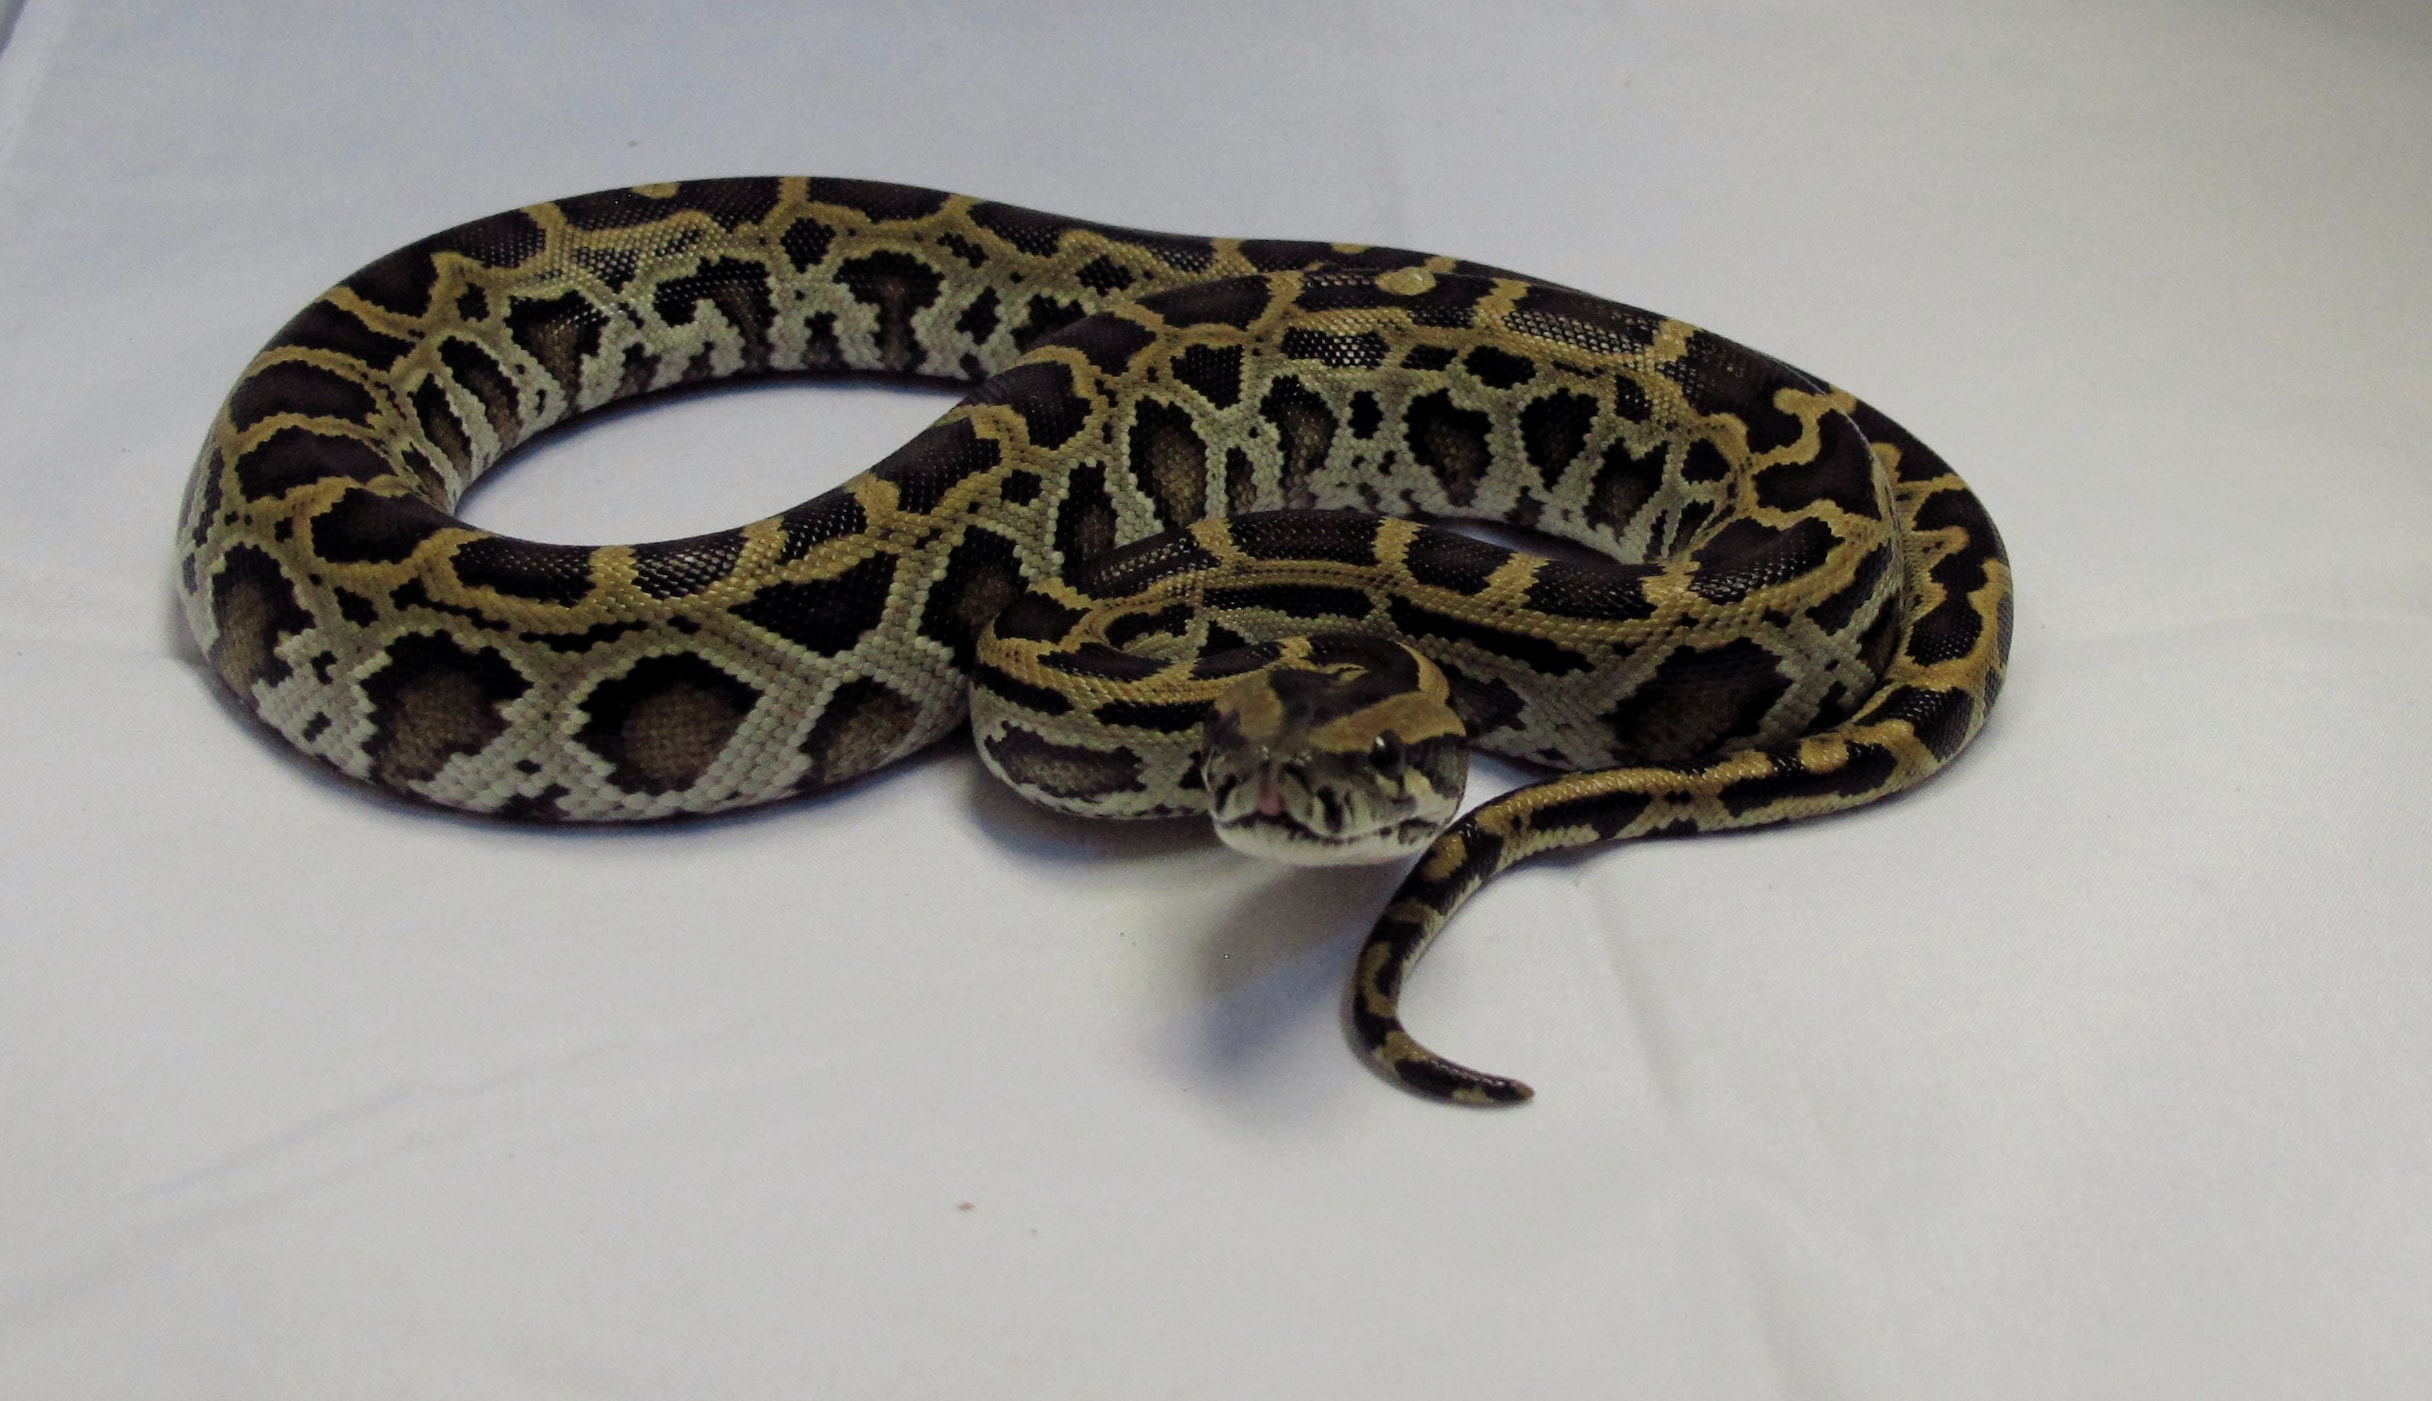 Burmese Python